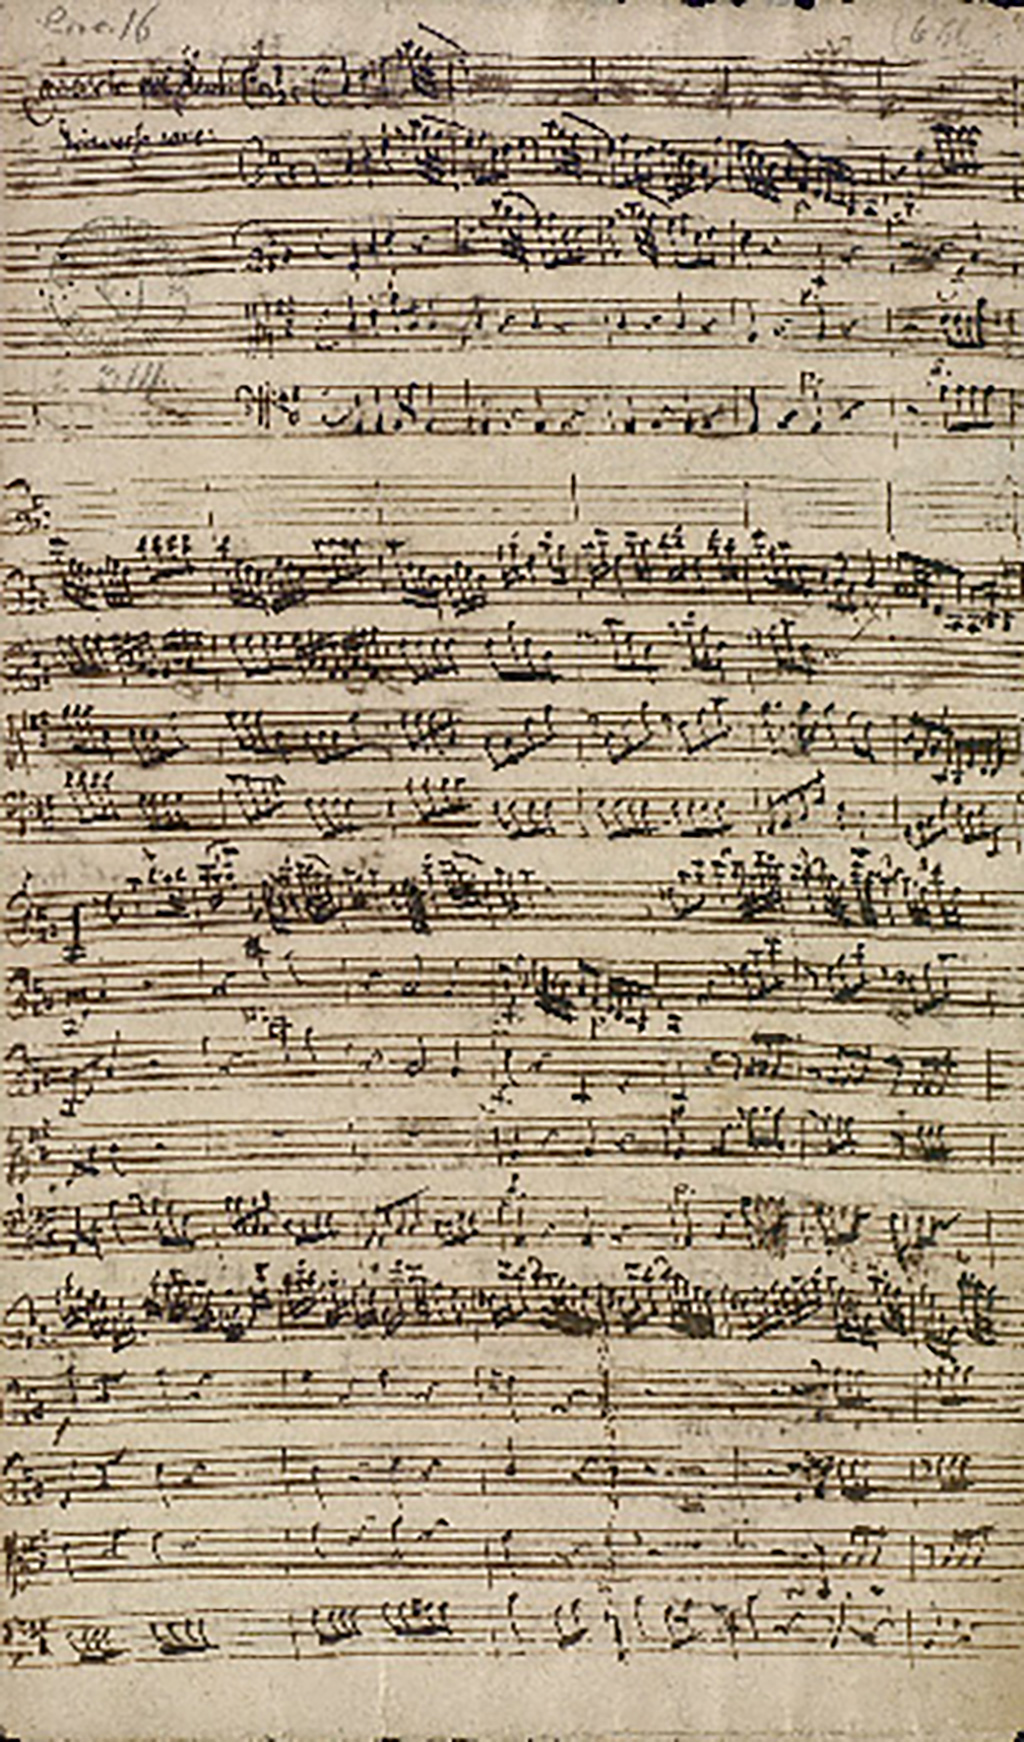 Das Bild zeigt eine Seite aus den "Concertos, 1734-1741" Johann Melchior Molters (1696-1765). Badische Landesbibliothek Karlsruhe, Mus. Hs. 314.  